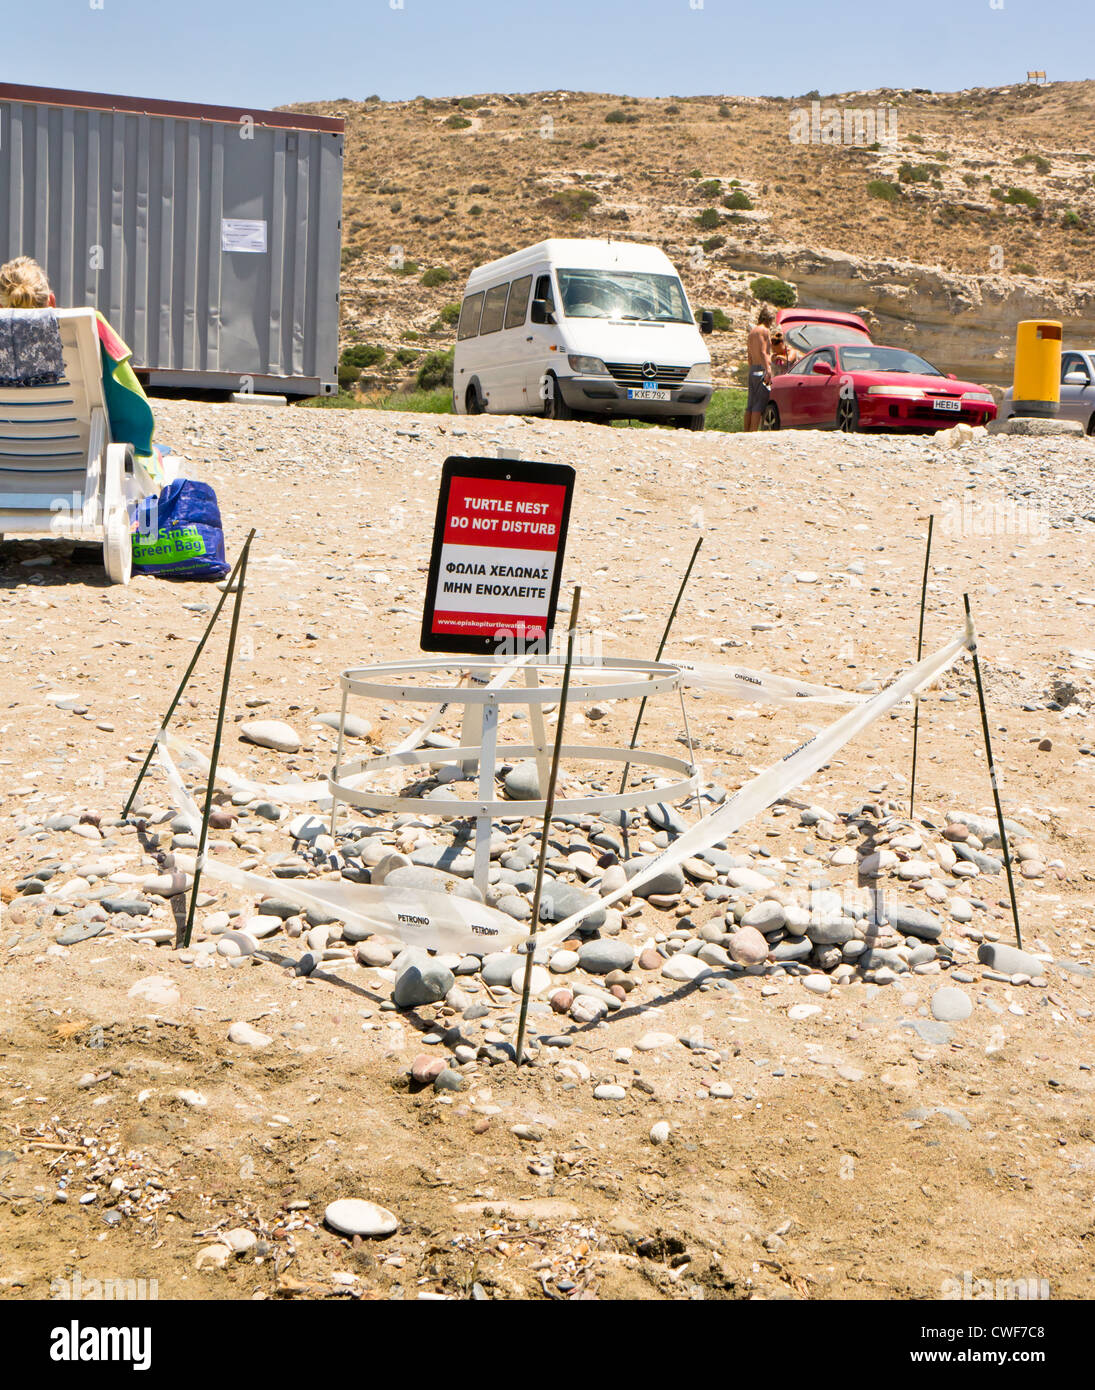 Un nid de tortues sur la plage touristique du curium, Chypre, protégée par une barrière de protection et pour éviter d'endommager la bande Banque D'Images